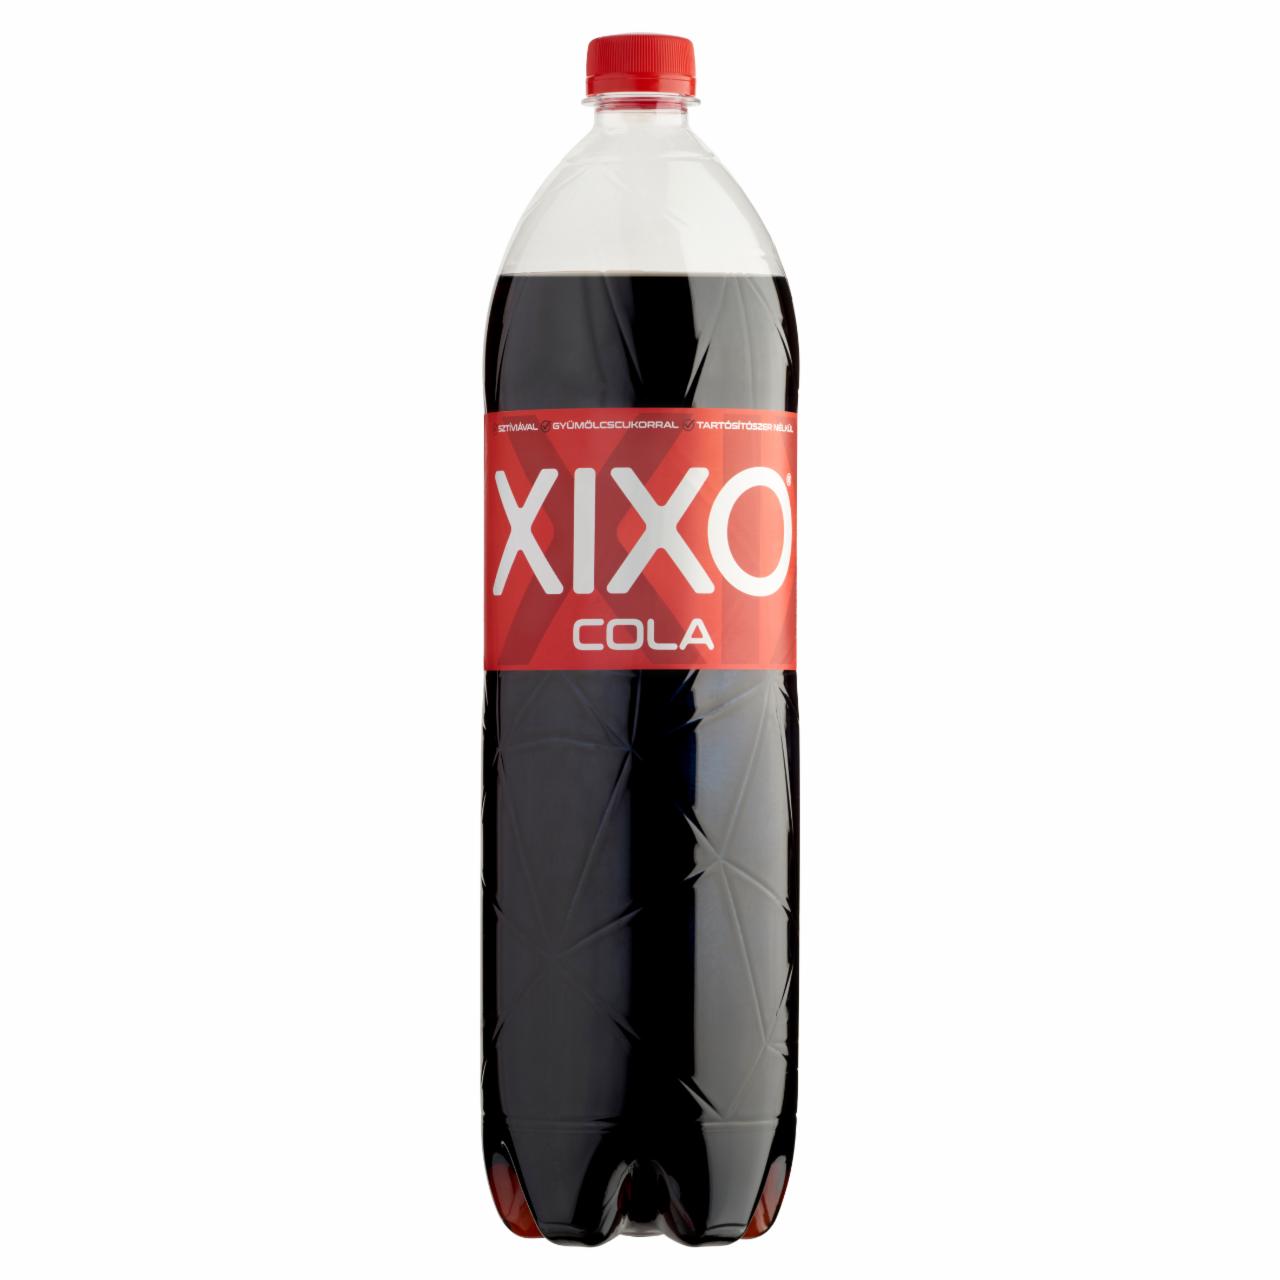 Képek - XIXO Cola kólaízű szénsavas üdítőital cukorral és édesítőszerrel 1,5 l